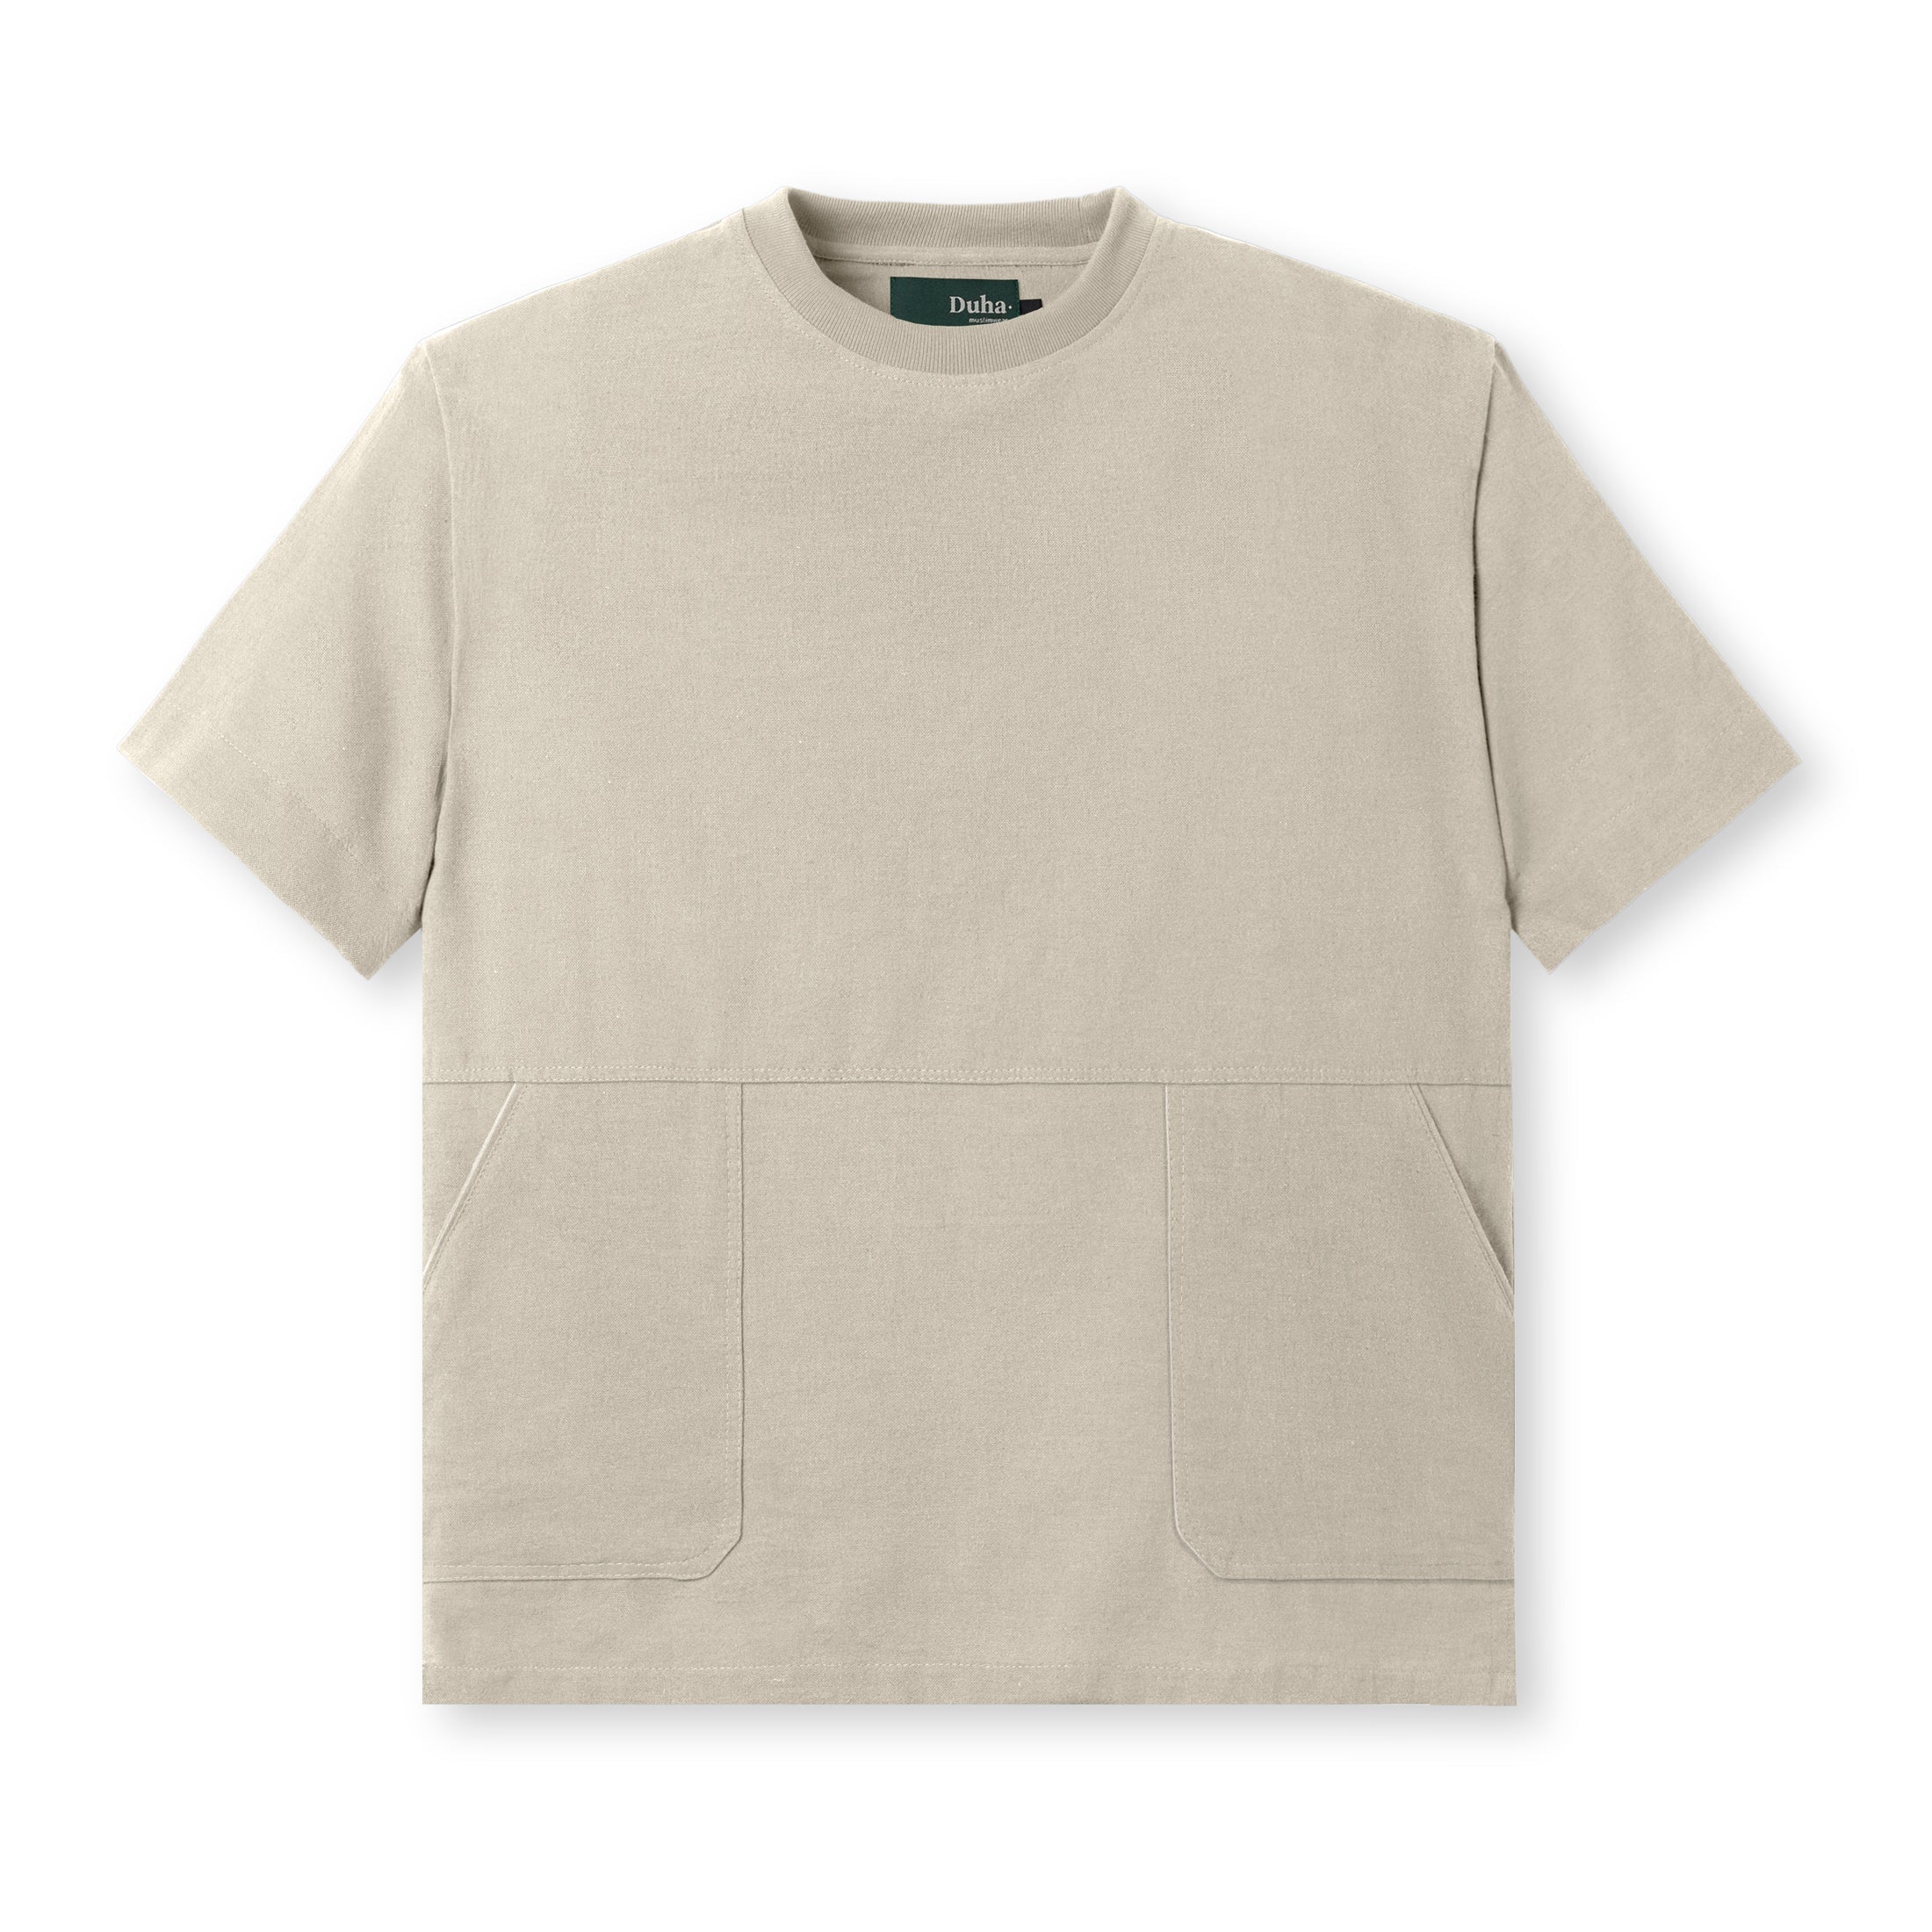 Badr Short Sleeve Pocket T-Shirt - Broken White